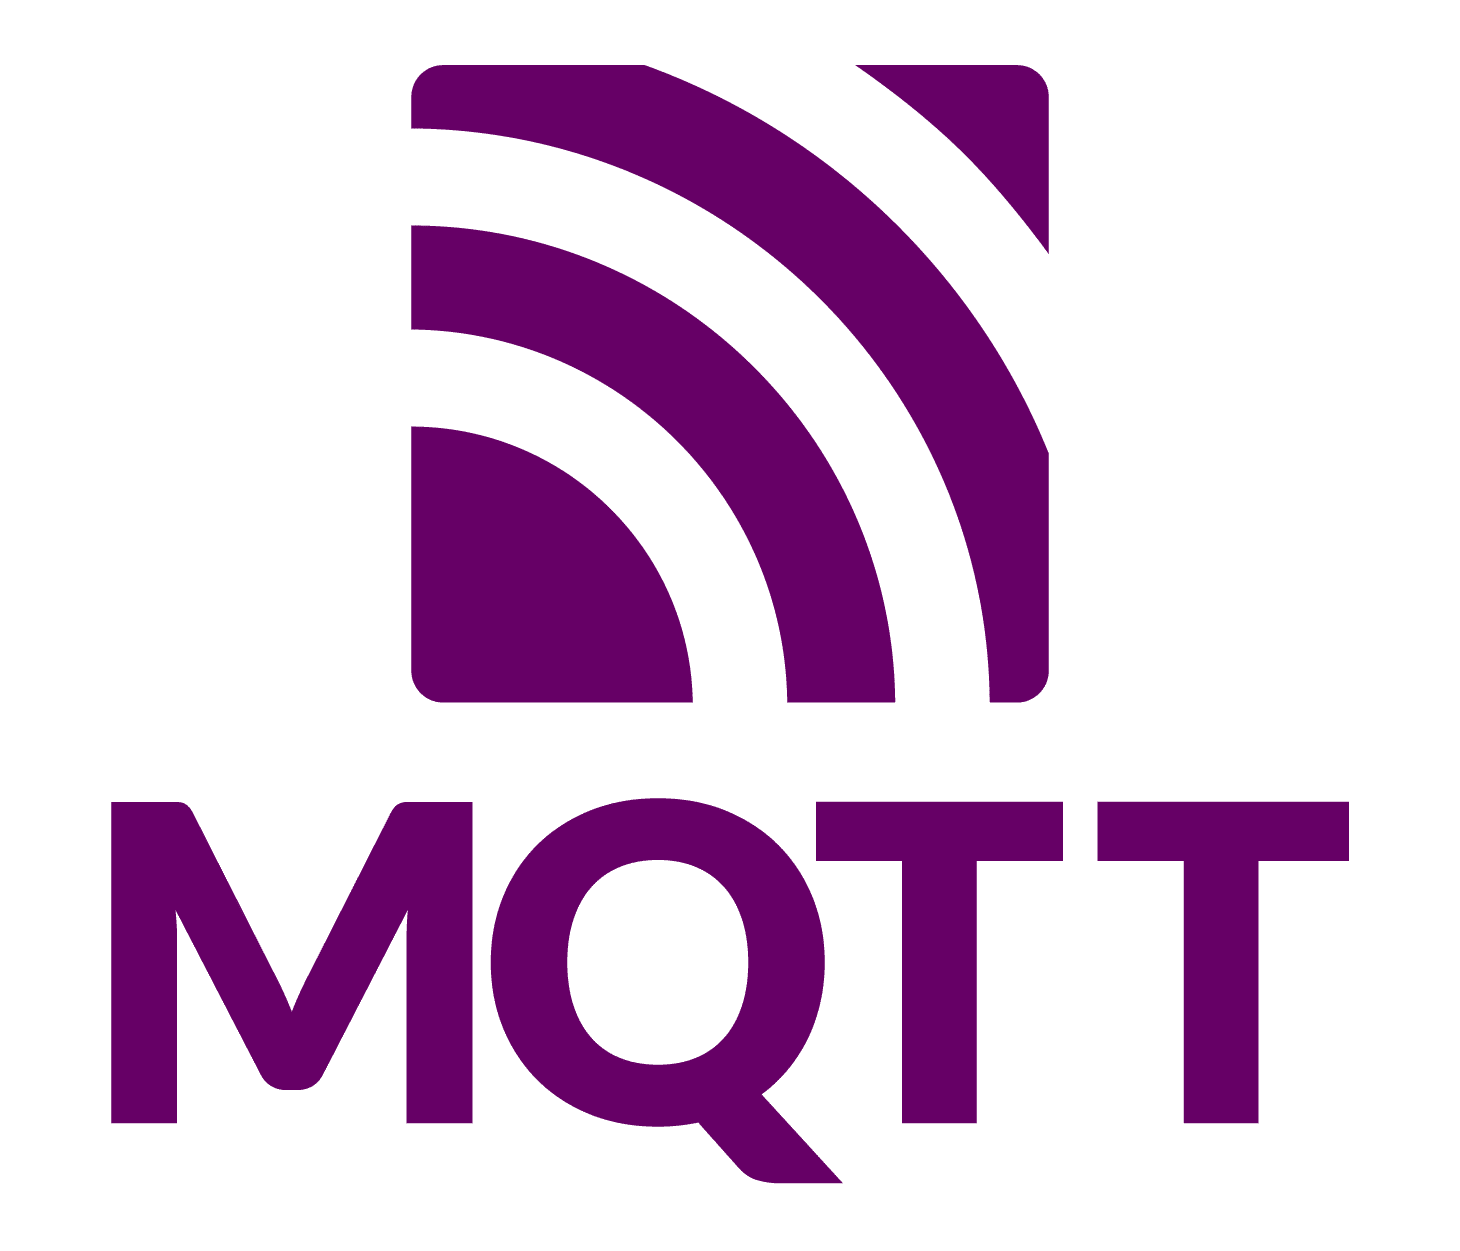 Endpoint Service: MQTT